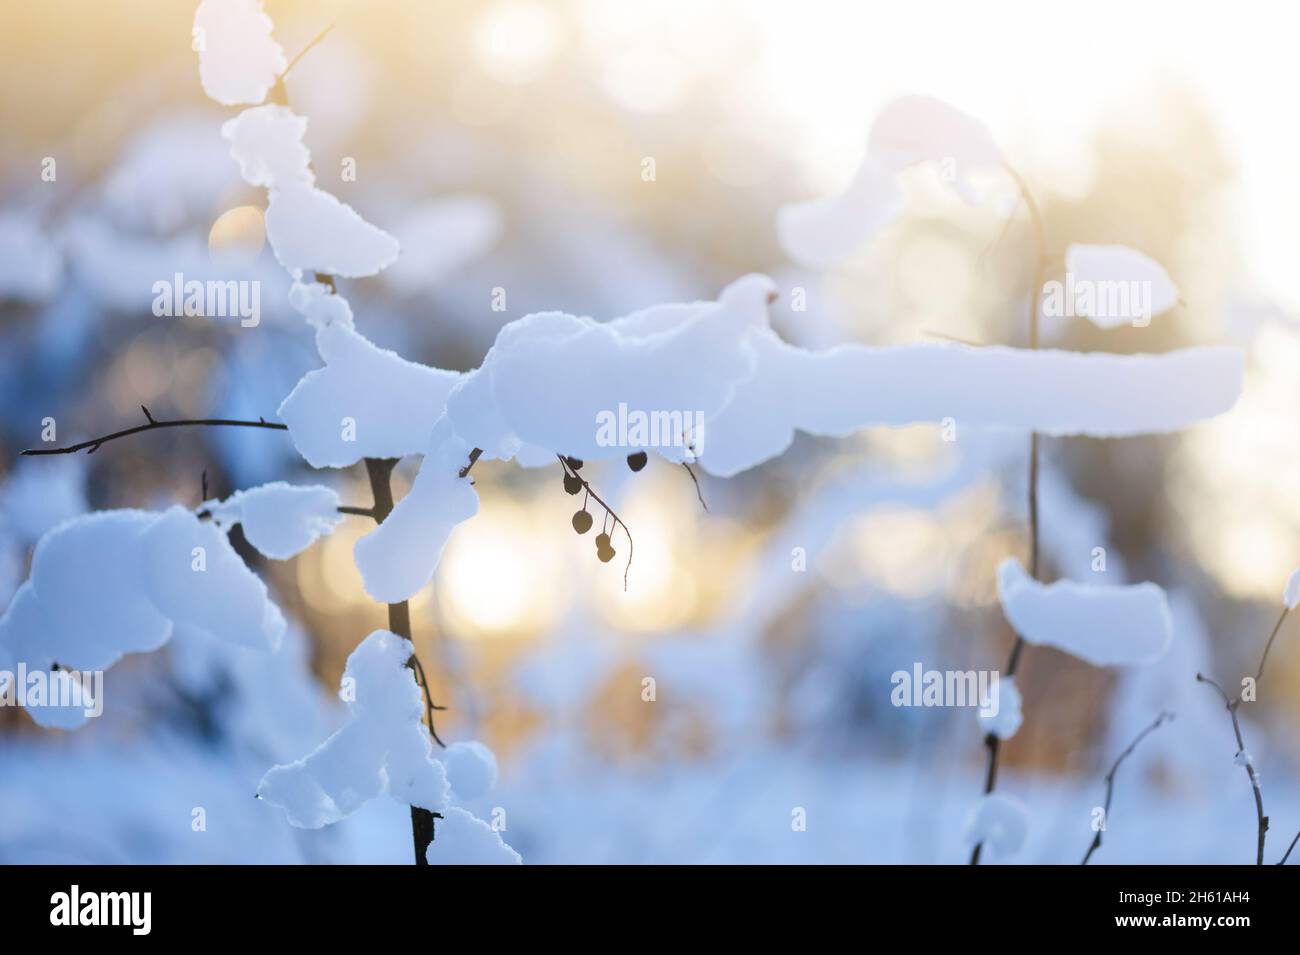 Scène d'hiver - plantes séchées couvertes de neige Banque D'Images